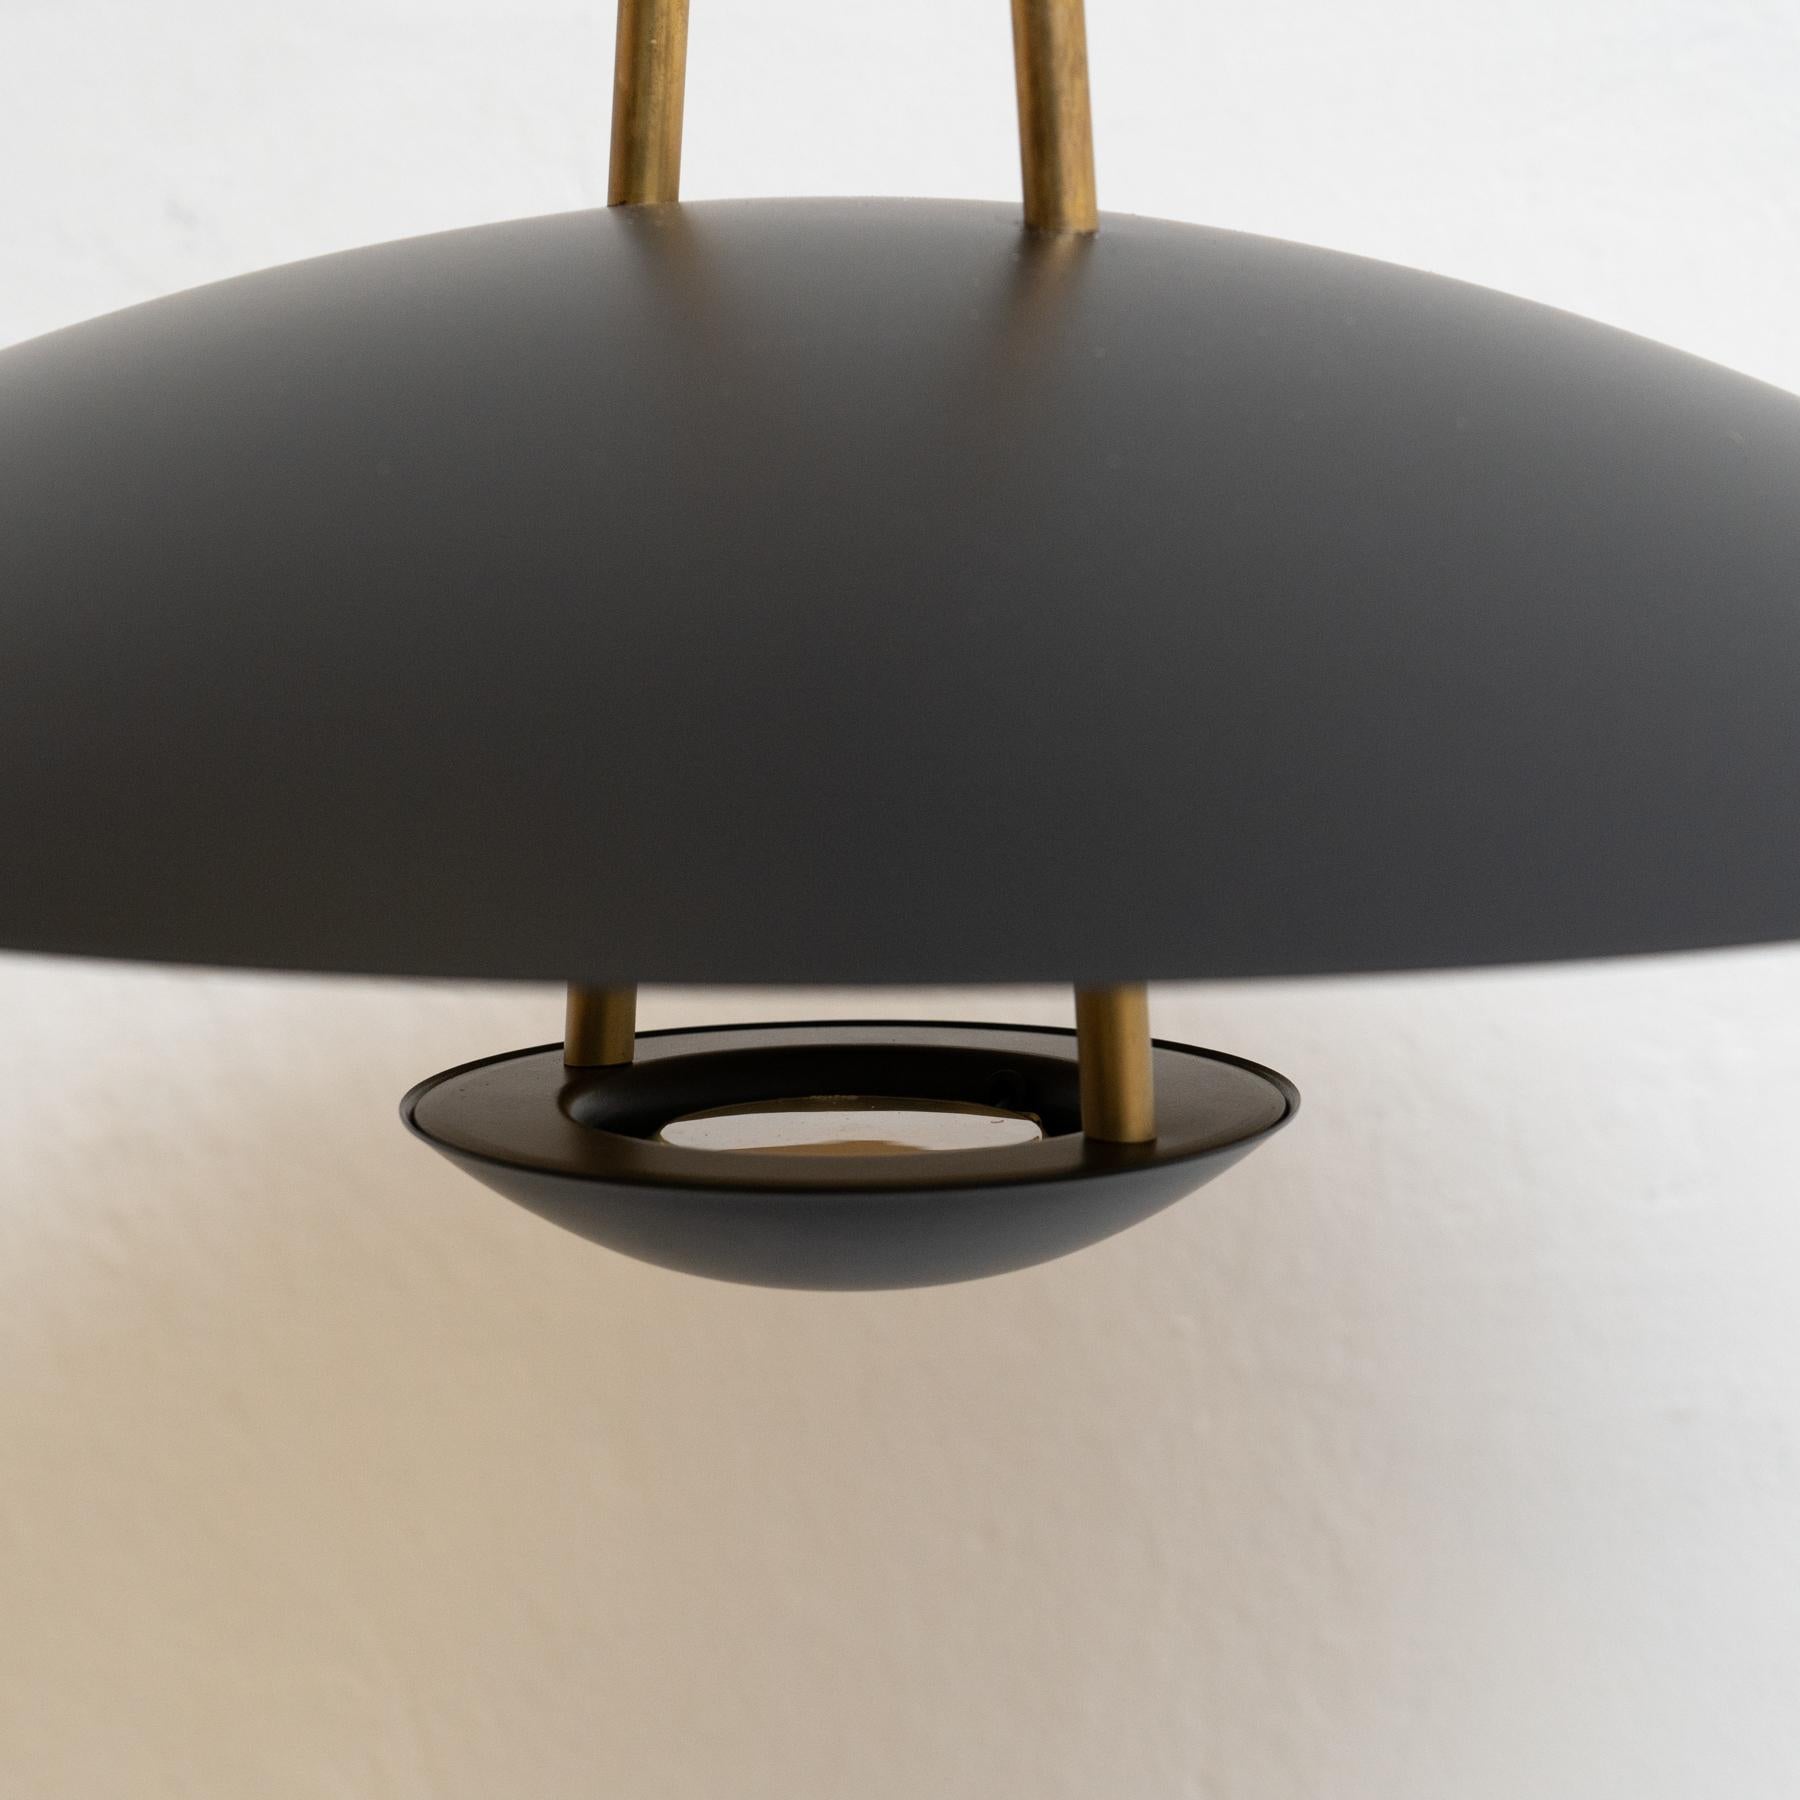 Brass Scandinavian Design Ceiling Lamp, Johan Carpner Satellit 55 by Konsthantverk For Sale